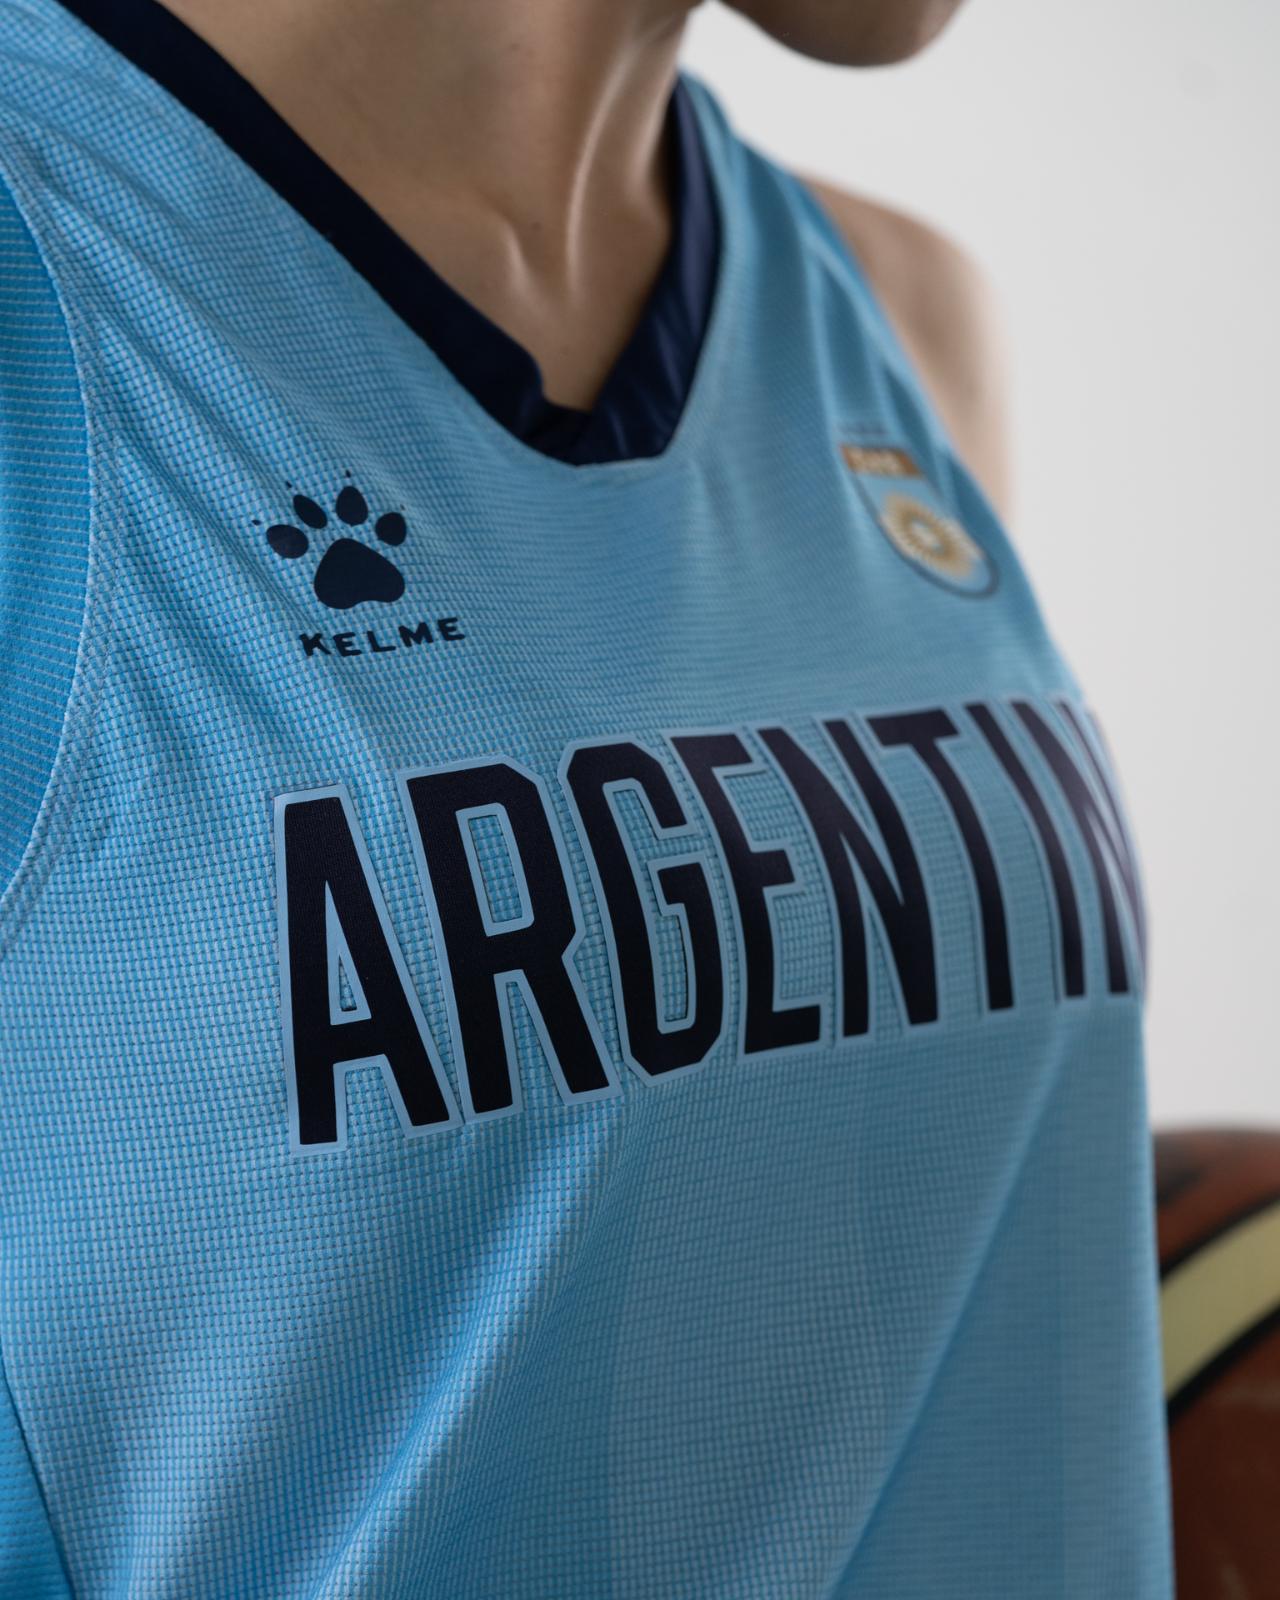 argentina basketball jersey jordan